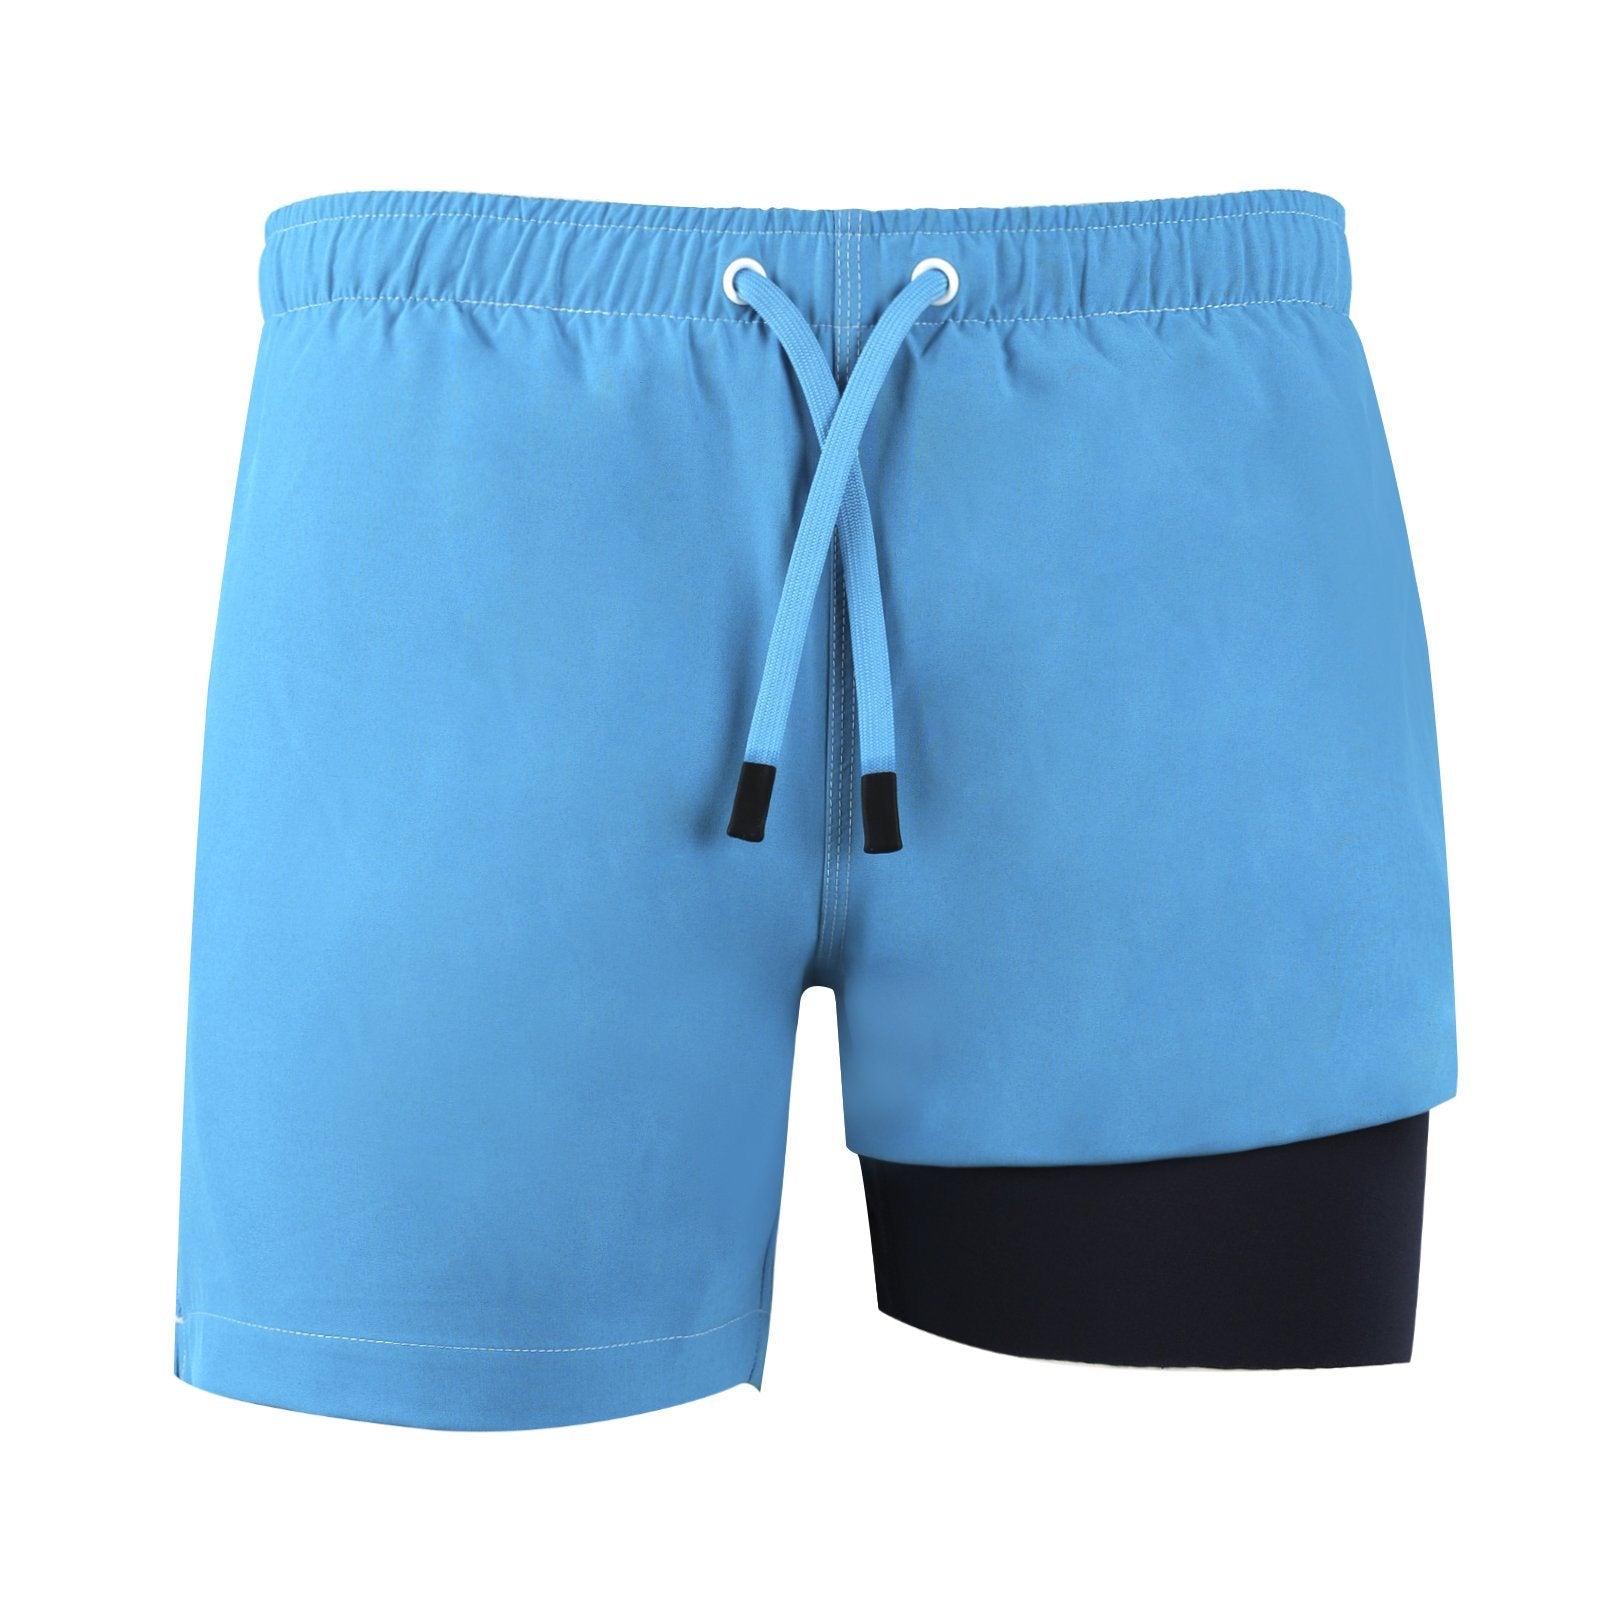 NoNetz Men's Retro Shorts Slim Fit Anti Chafe Swim Trunks - Green - M